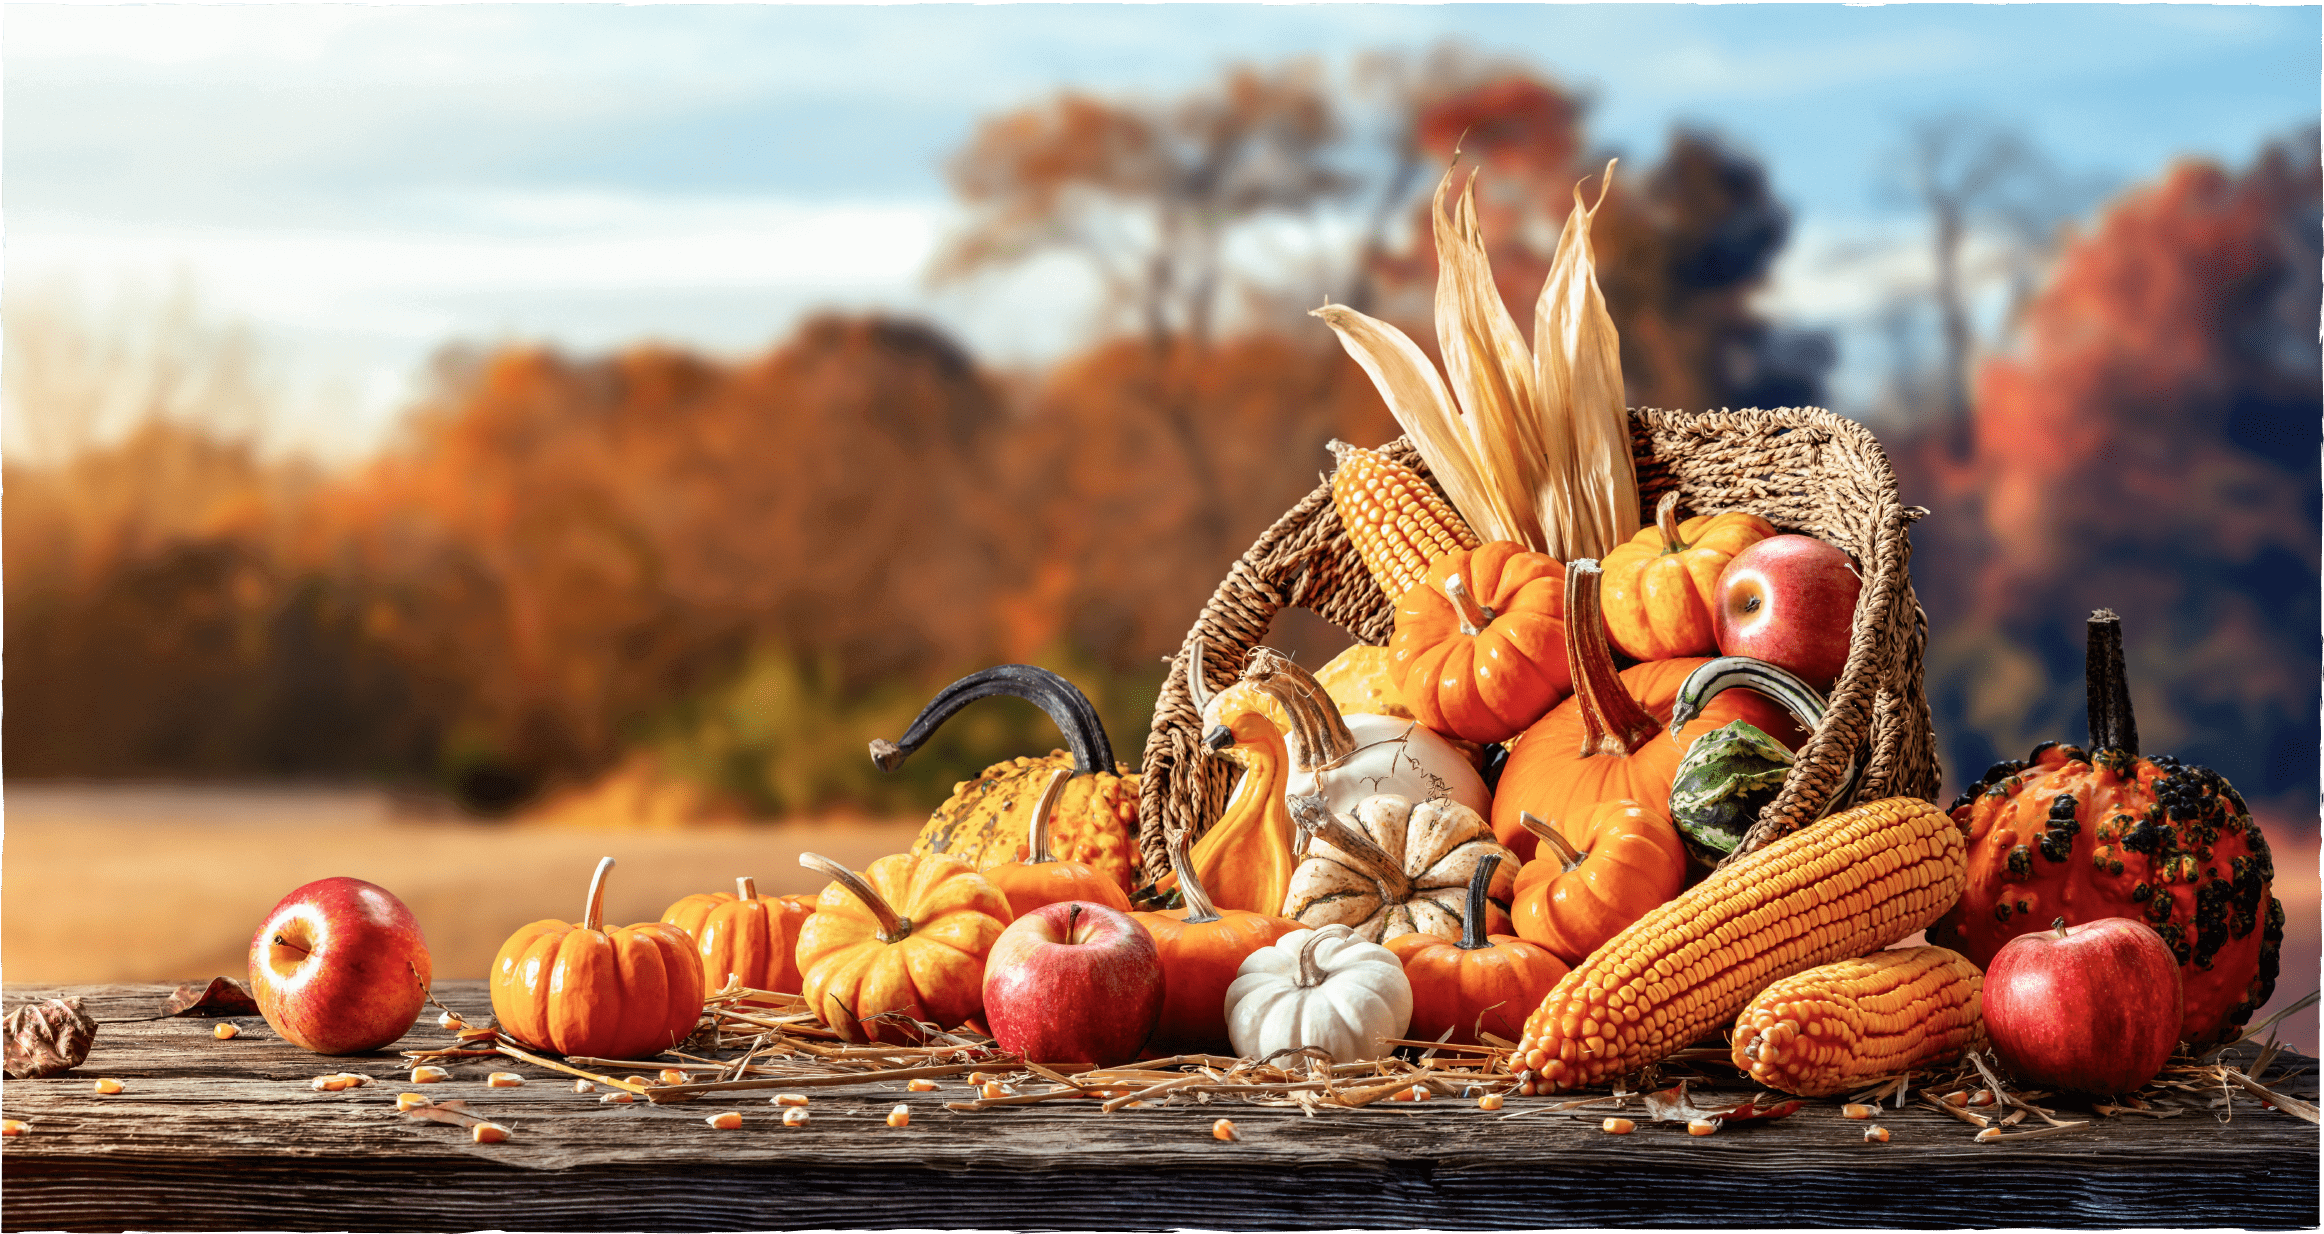 Herbstlicher Erntedank-Tisch mit Obst und Gemüse